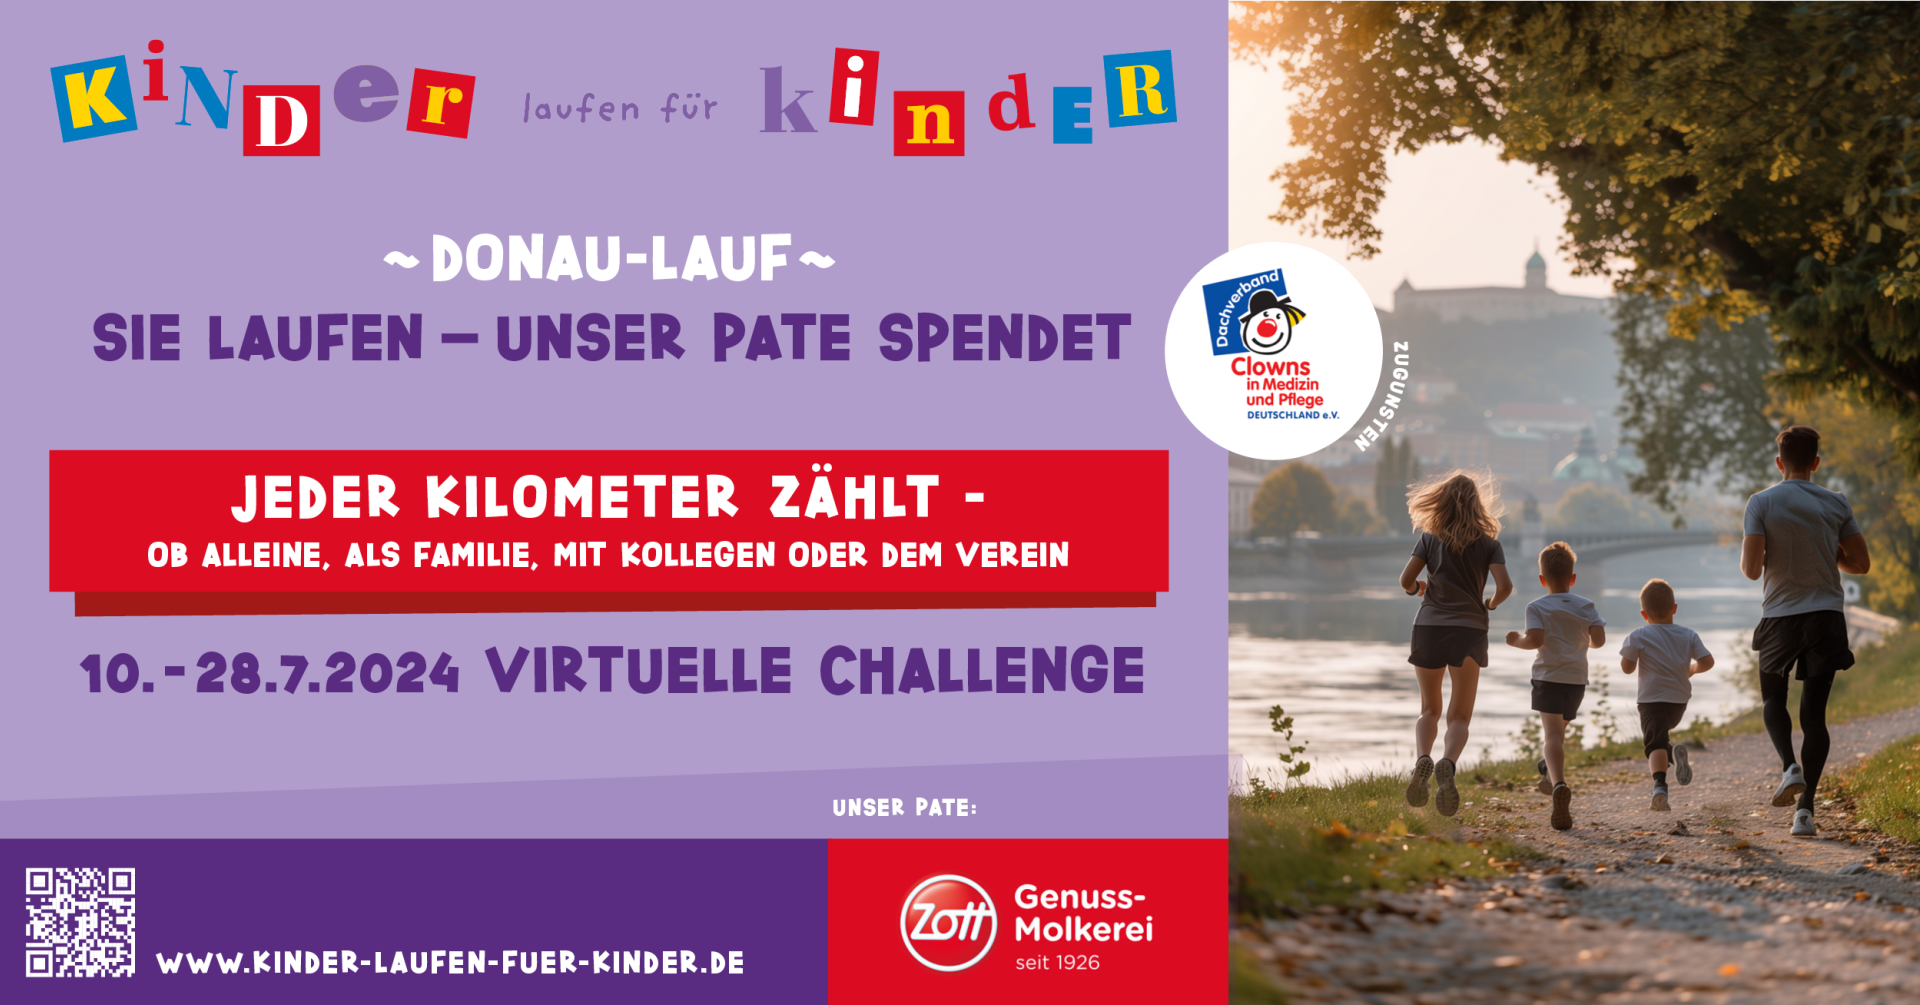 Aufruf-KlfK-Challenge-Donaulauf-2024-linkedin-Banner-Format 1200 x 628 px